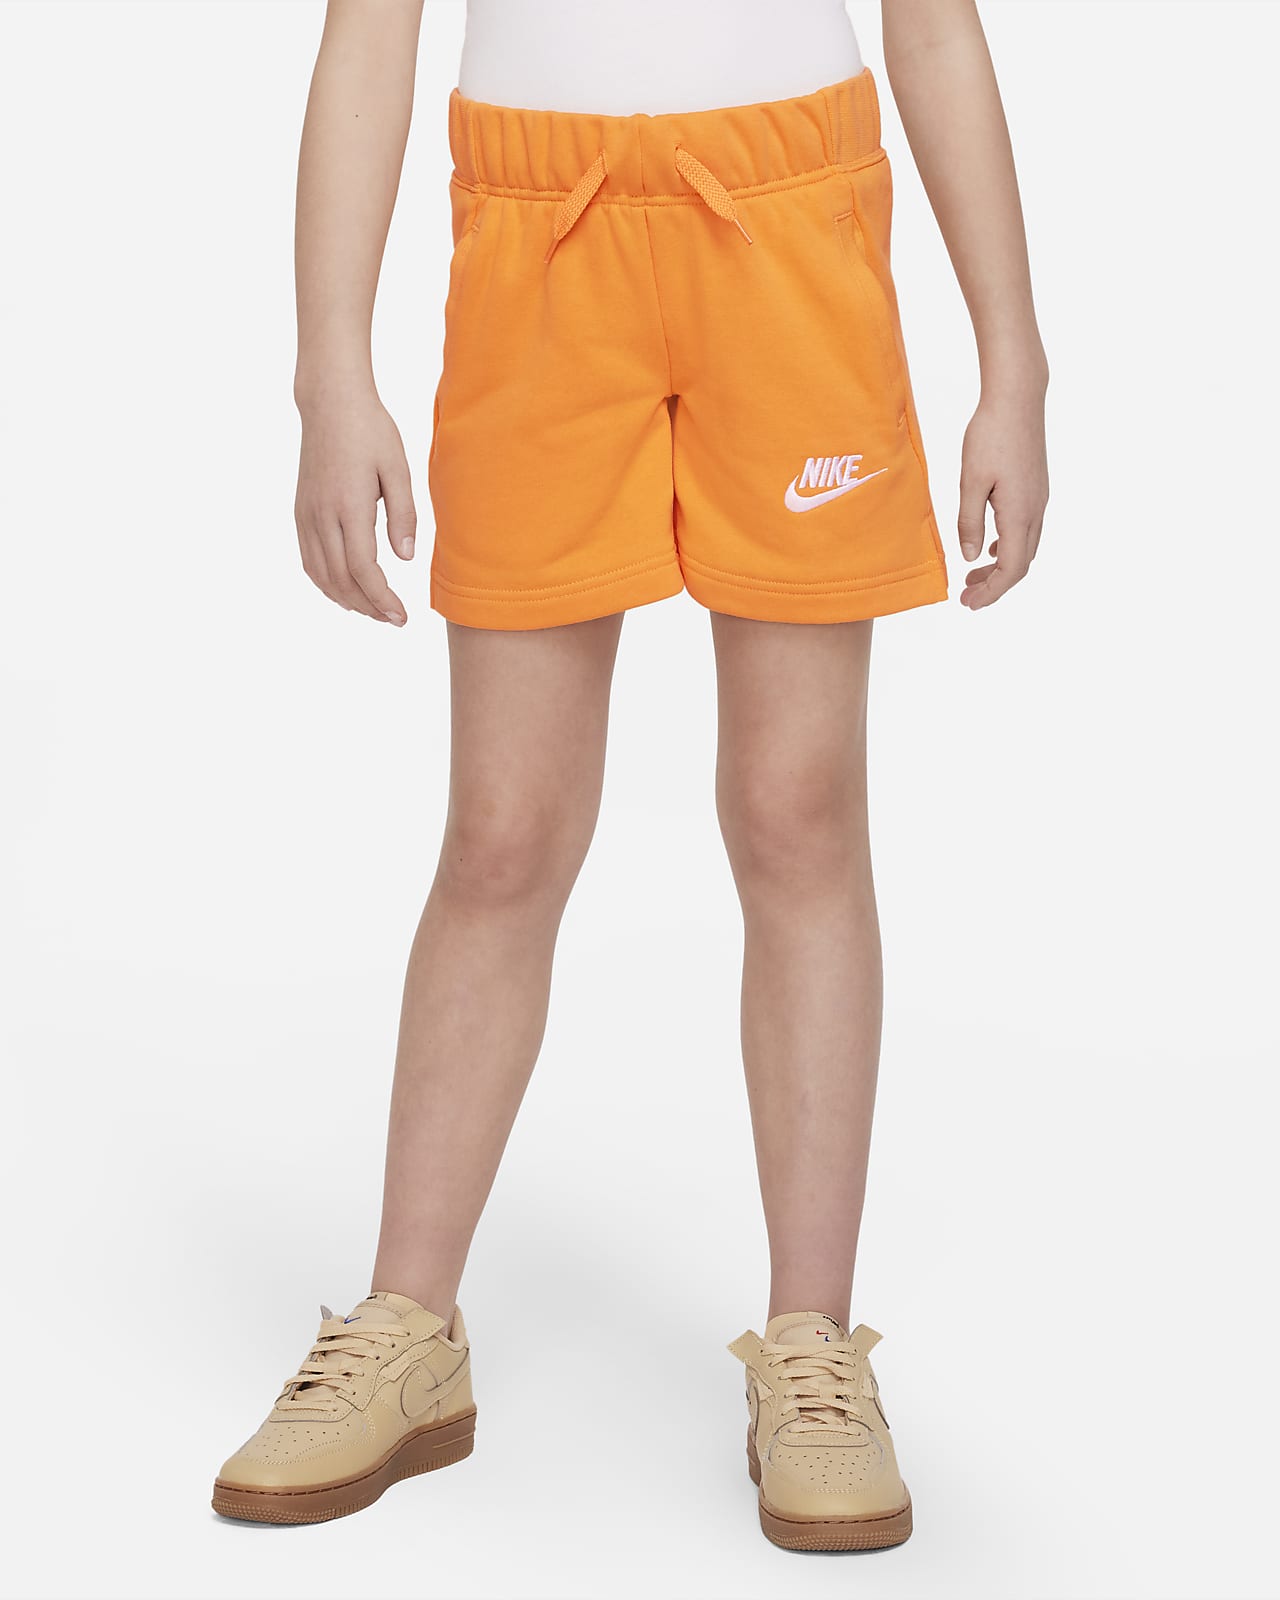 Massakre træ salami Nike Sportswear Club-shorts i french terry til store børn (piger). Nike DK